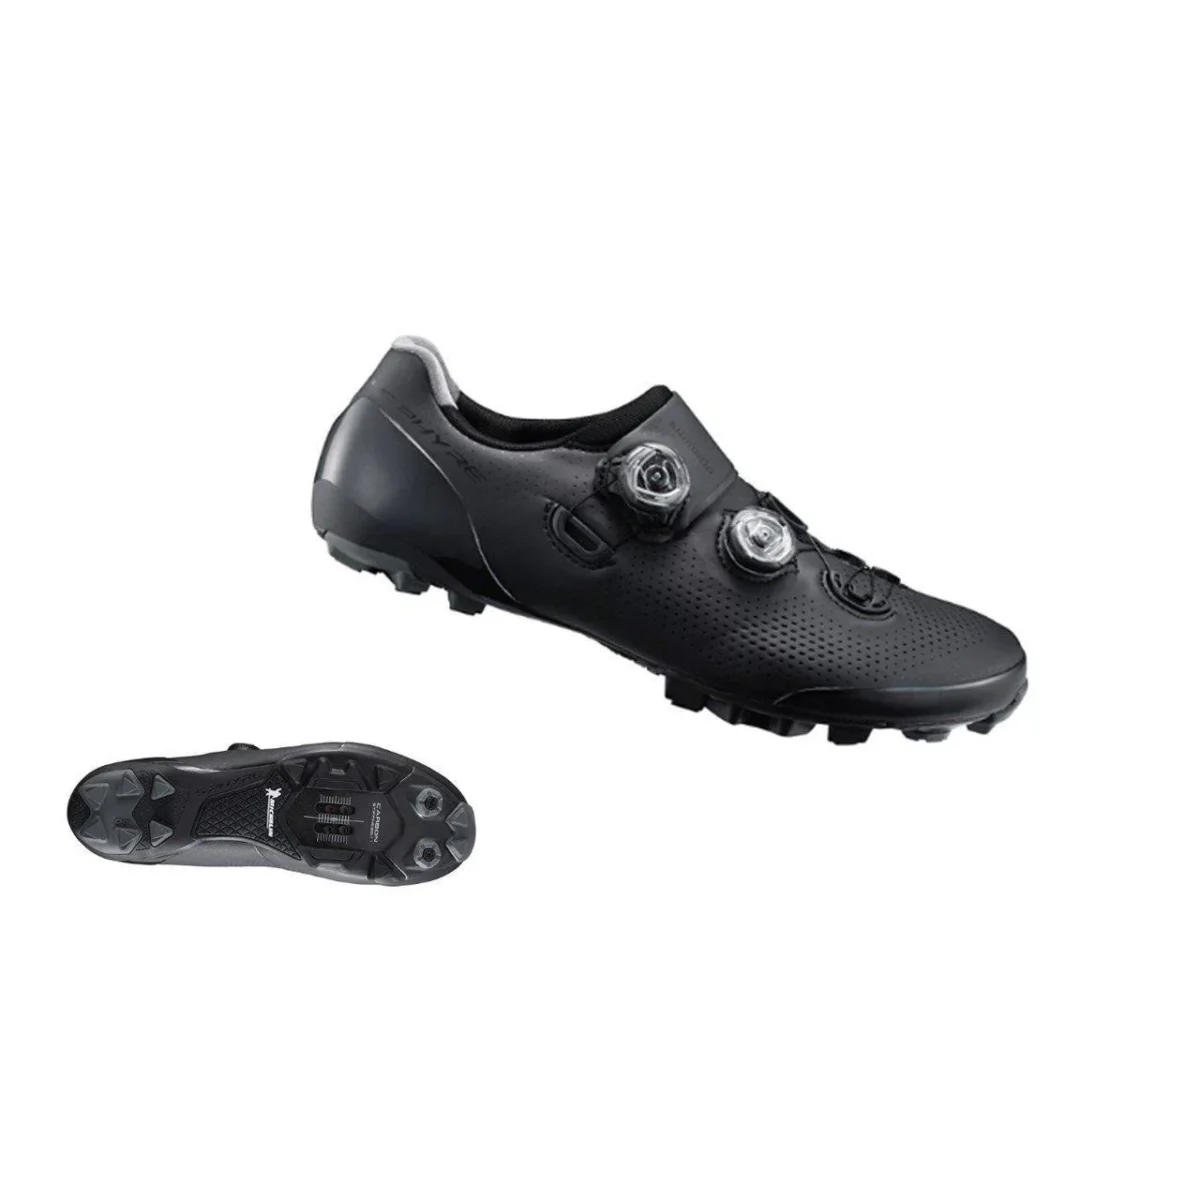 Zapatilla de montaña Shimano XC901 color negro vista lateral e inferior